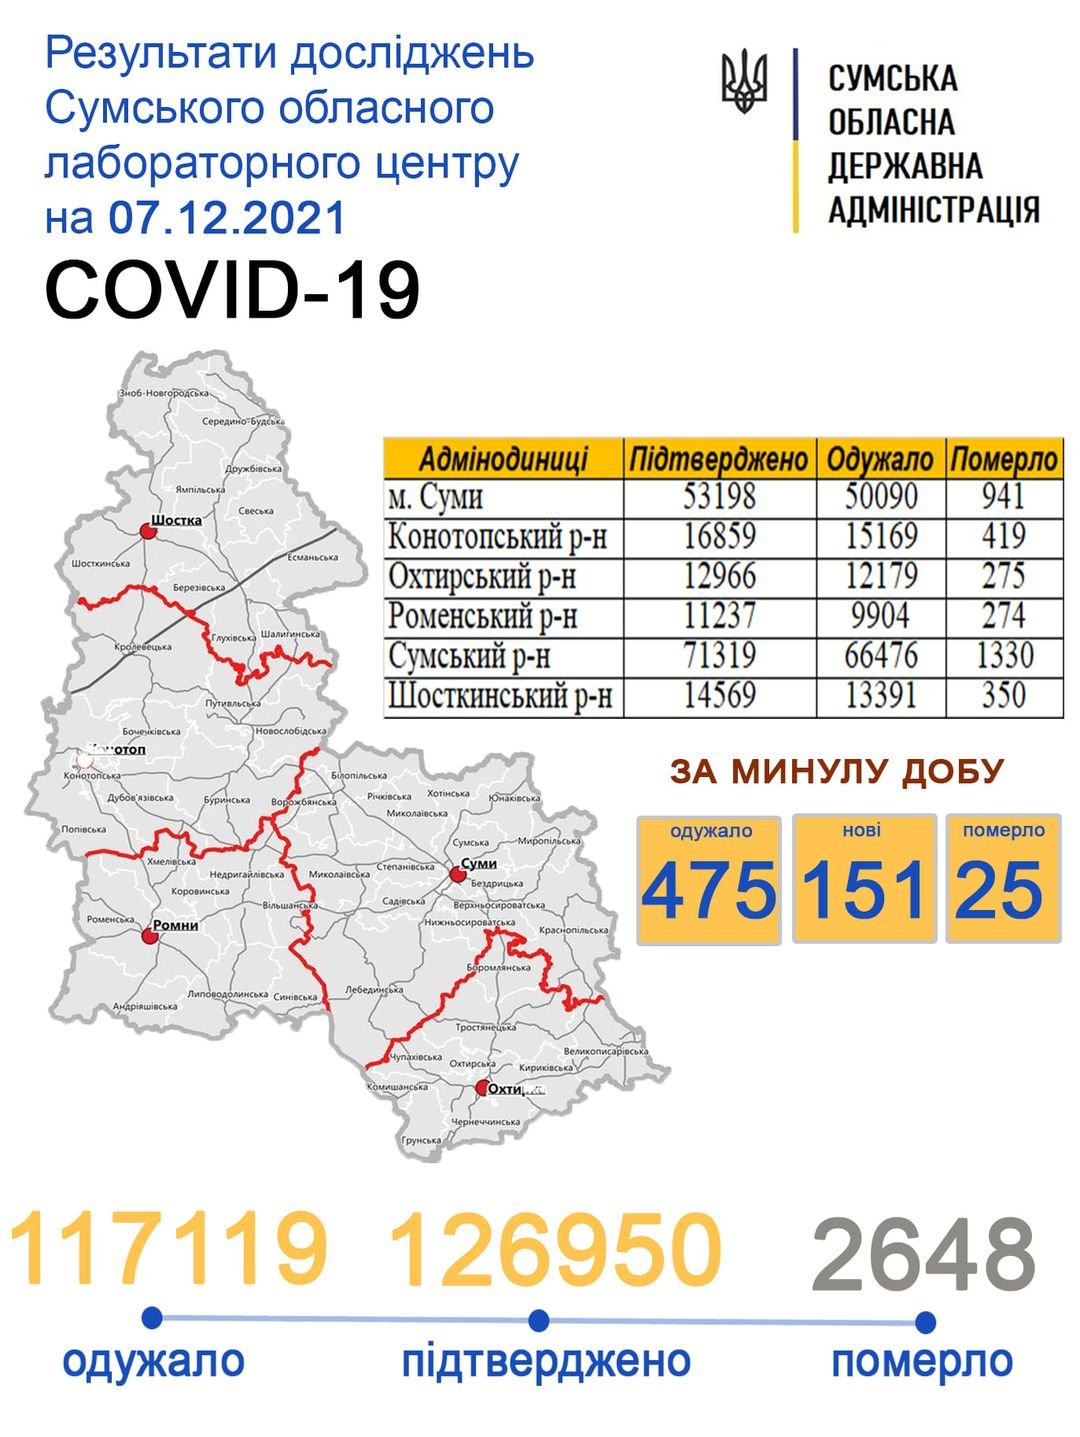    Covid-19  25  